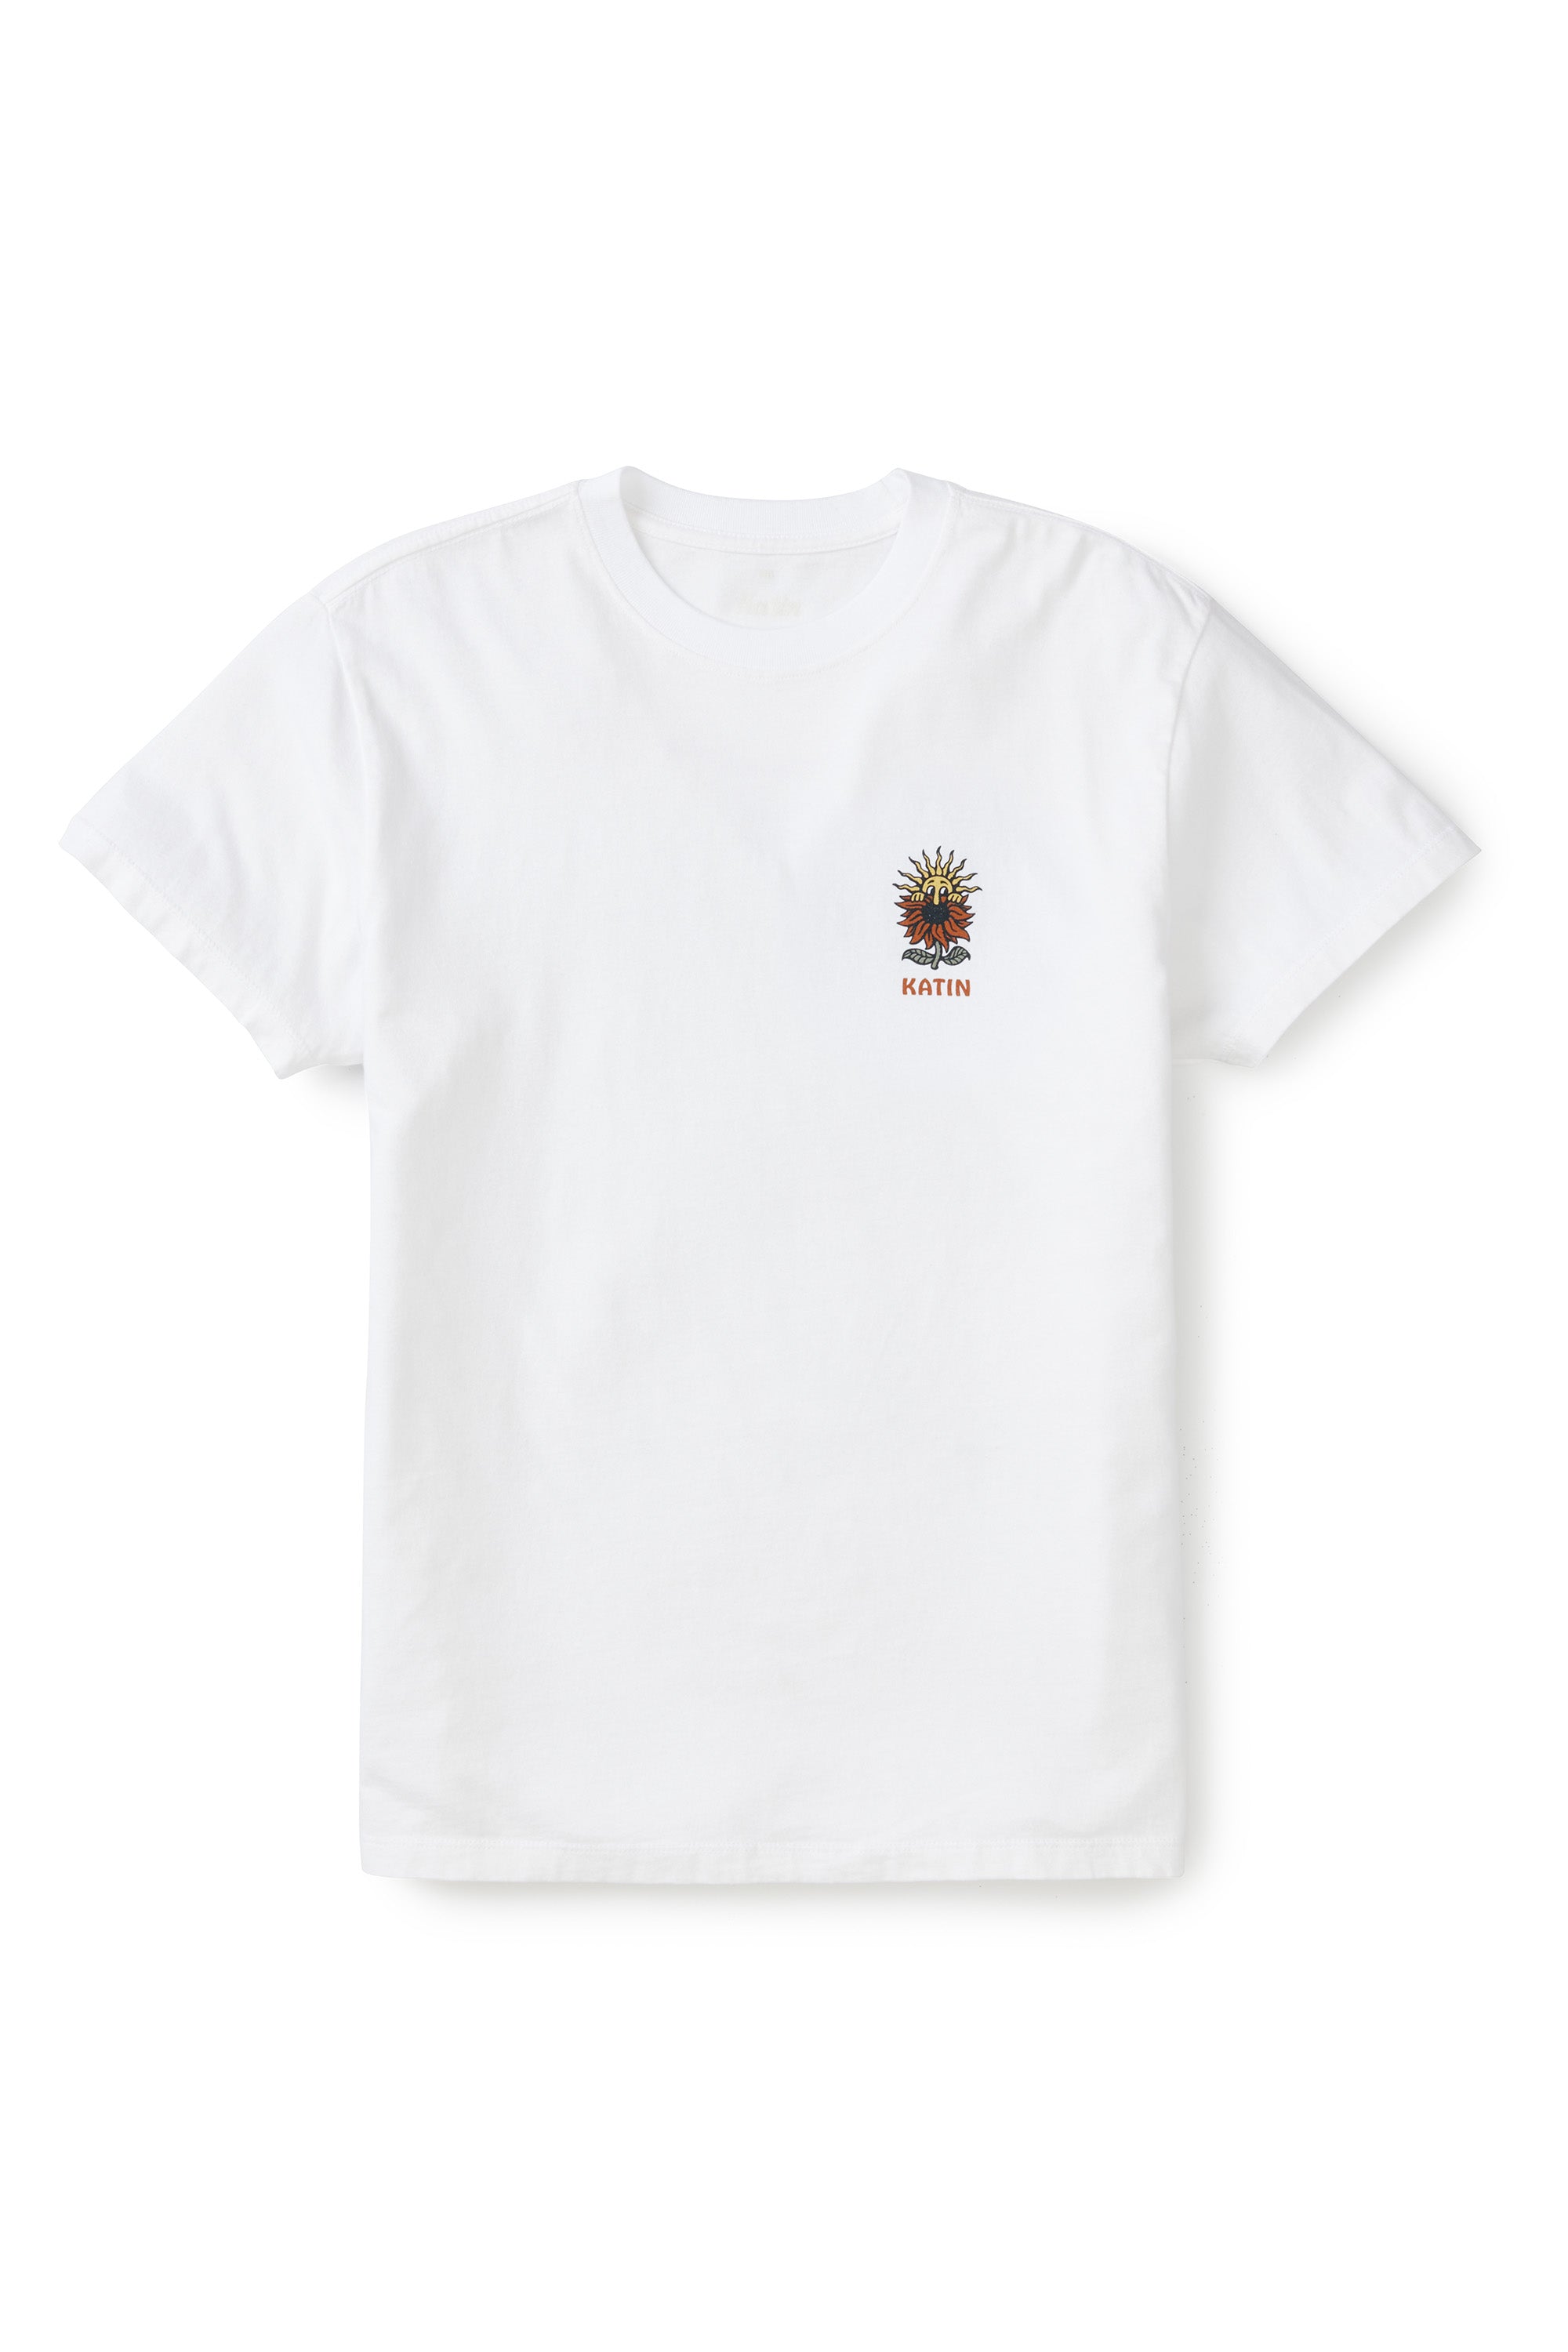 Pollen-T-Shirt | Katin USA - Kind